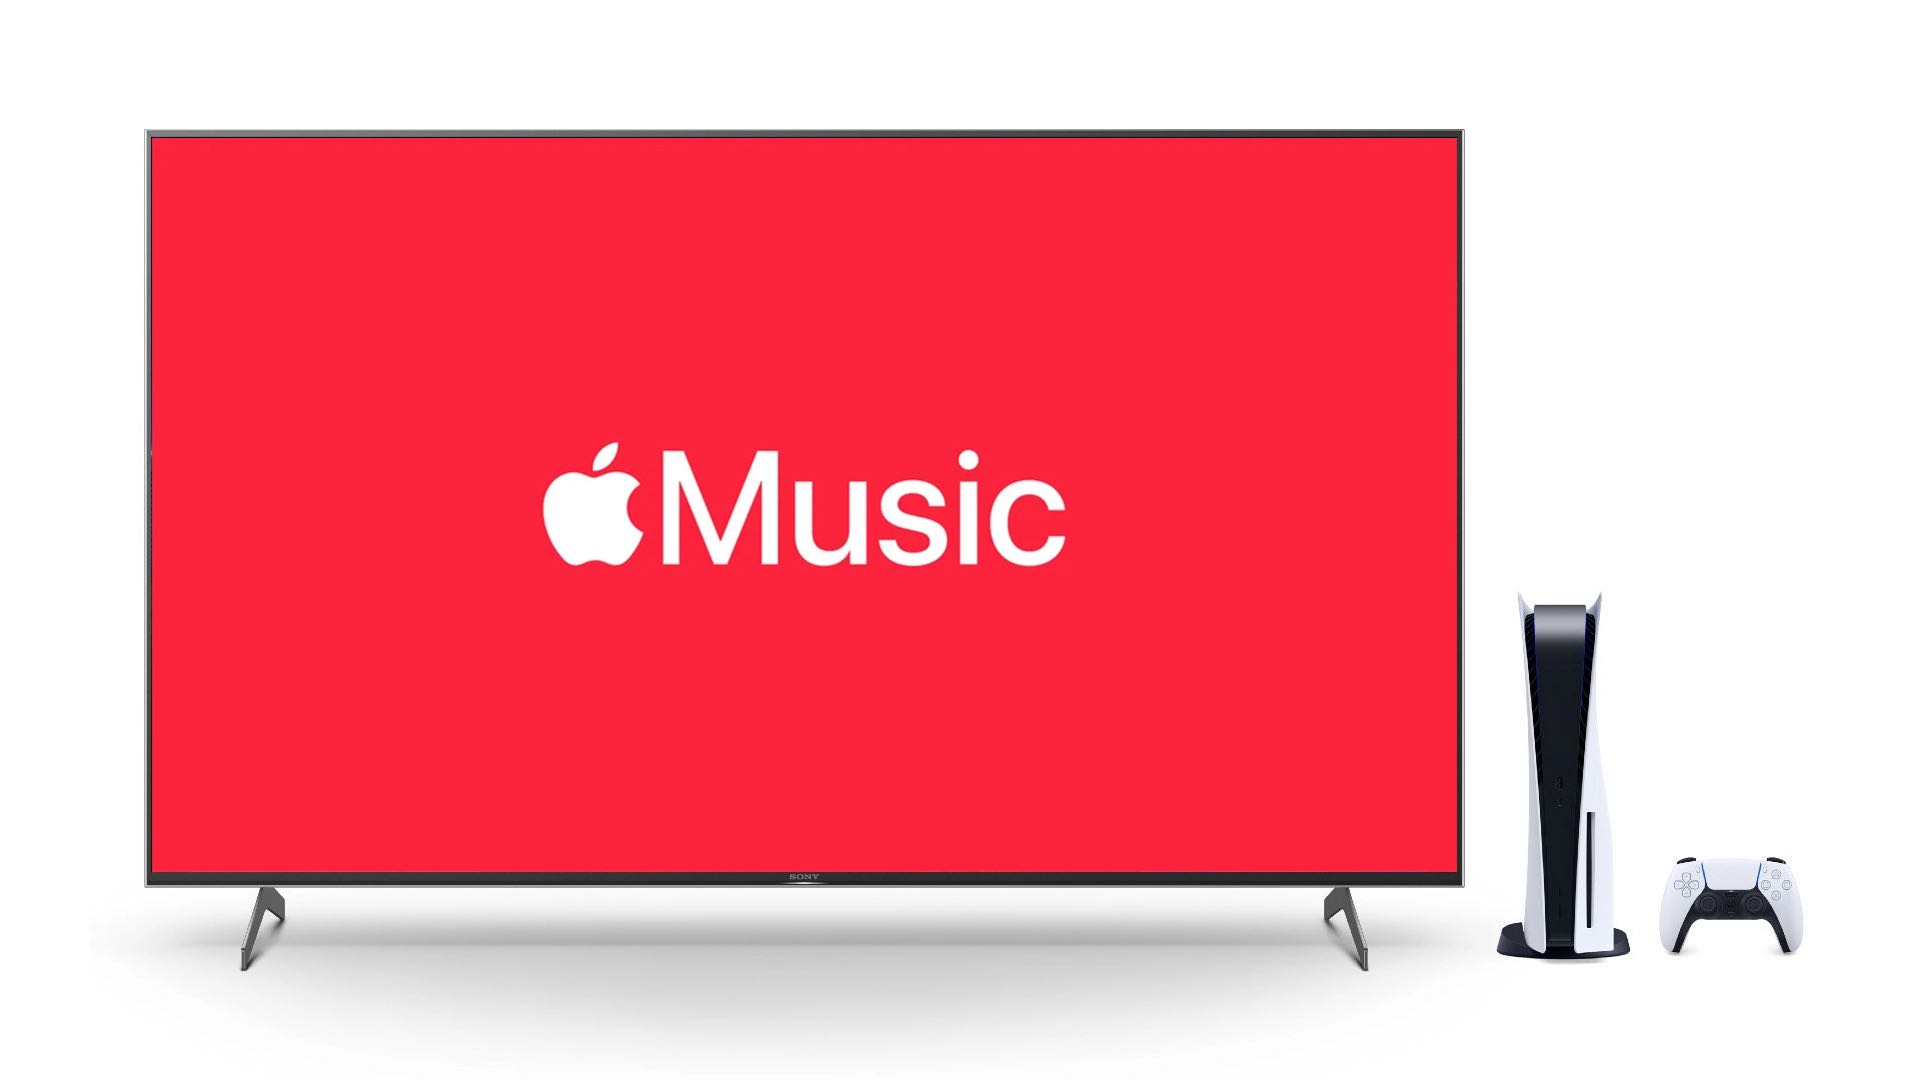 Le site web d'Apple laisse entendre que l'application Apple Music sera bientôt disponible sur les consoles de jeux